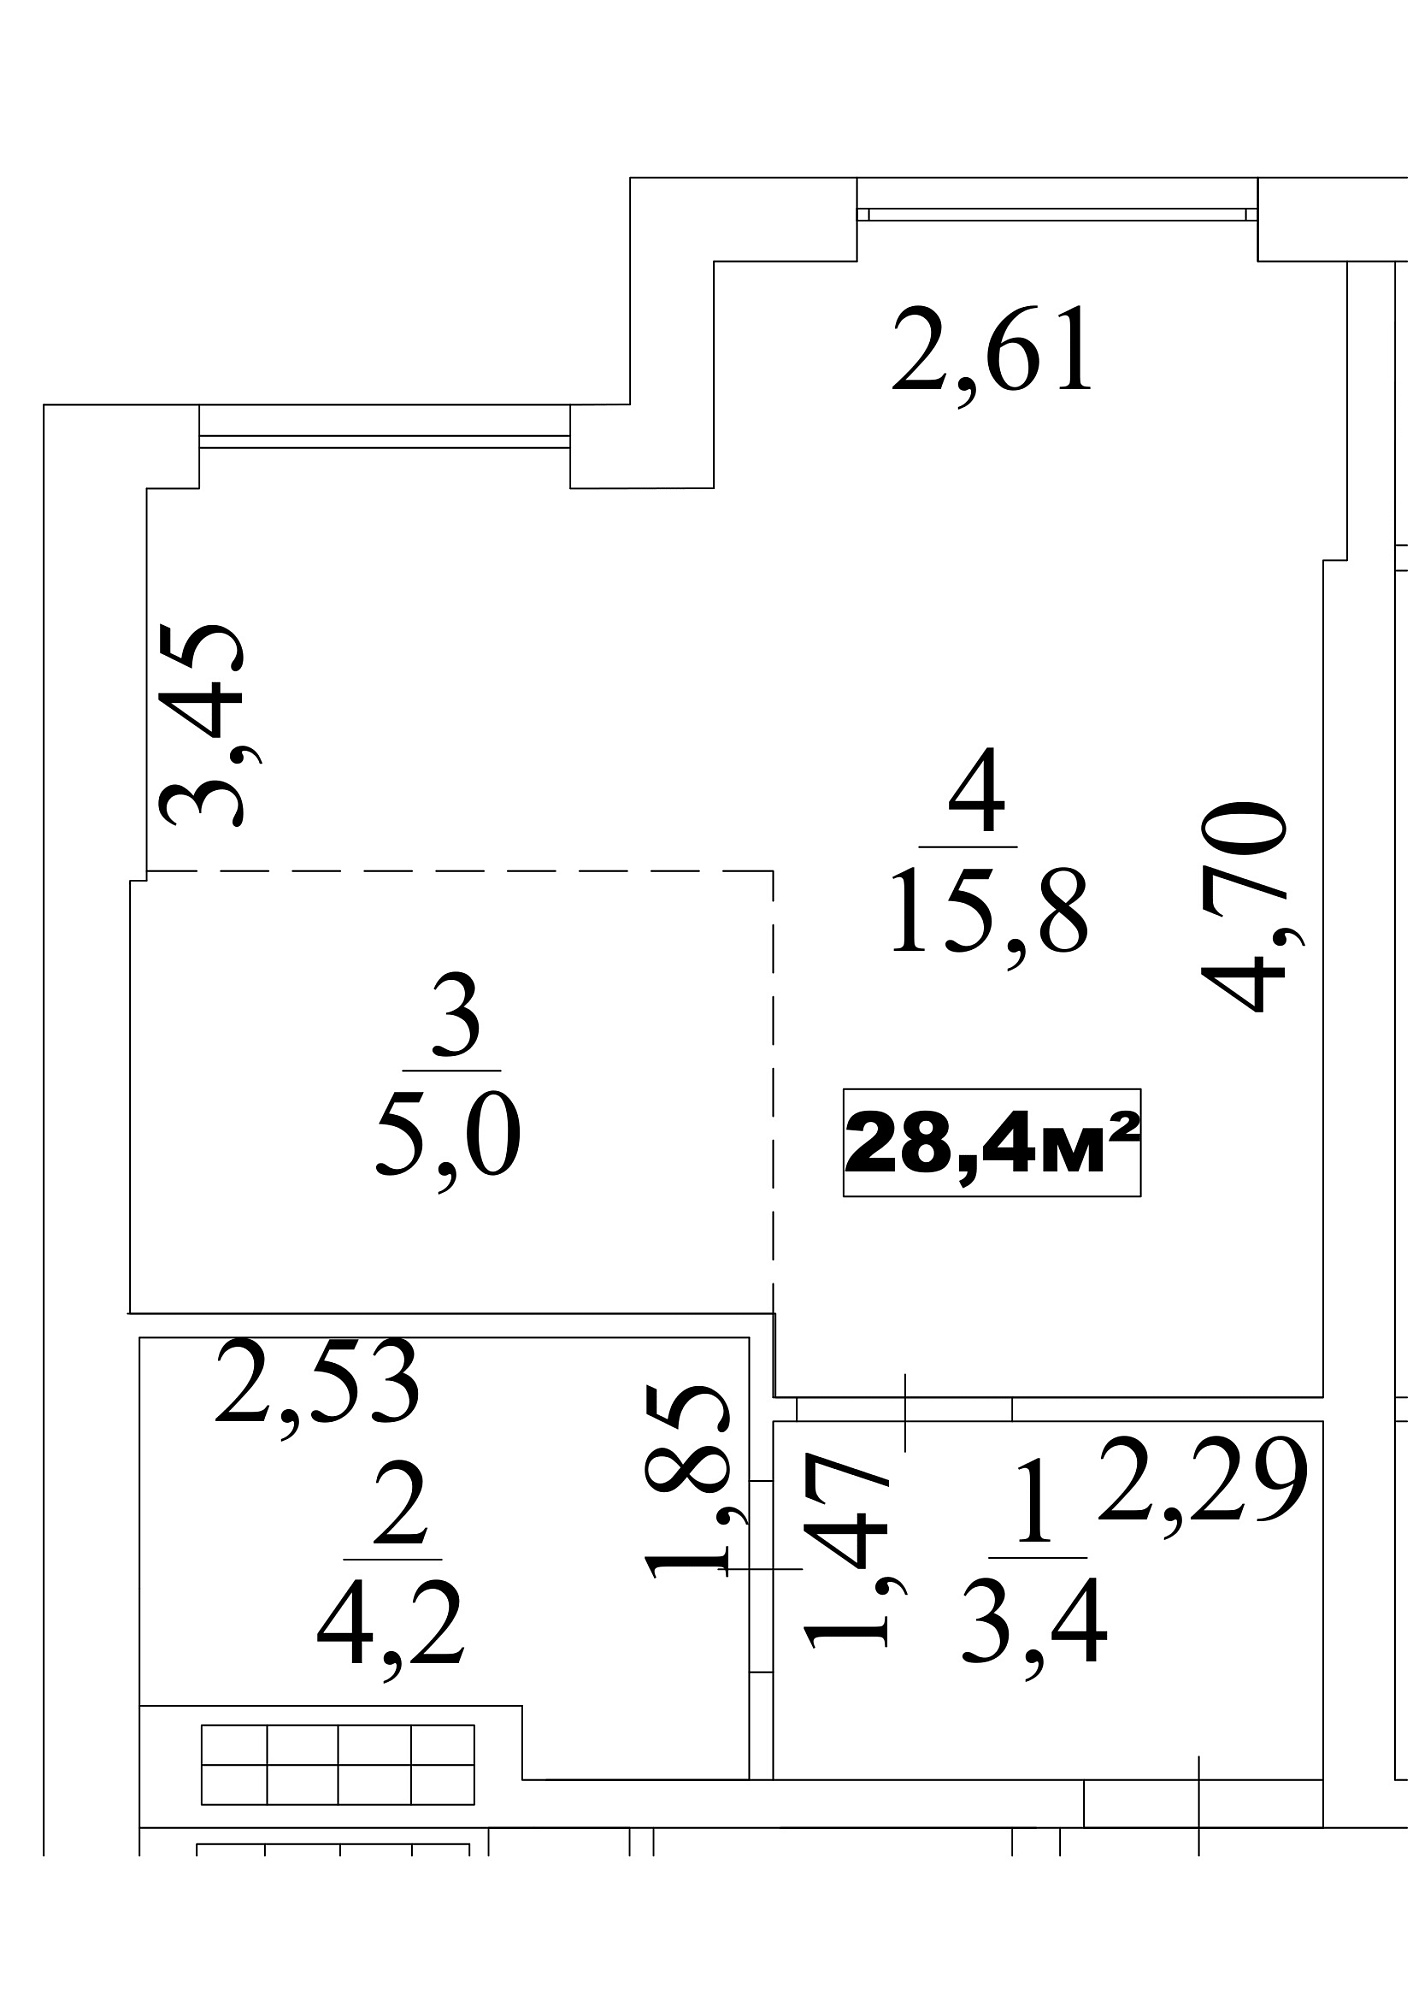 Планування Smart-квартира площею 28.4м2, AB-10-05/0039б.